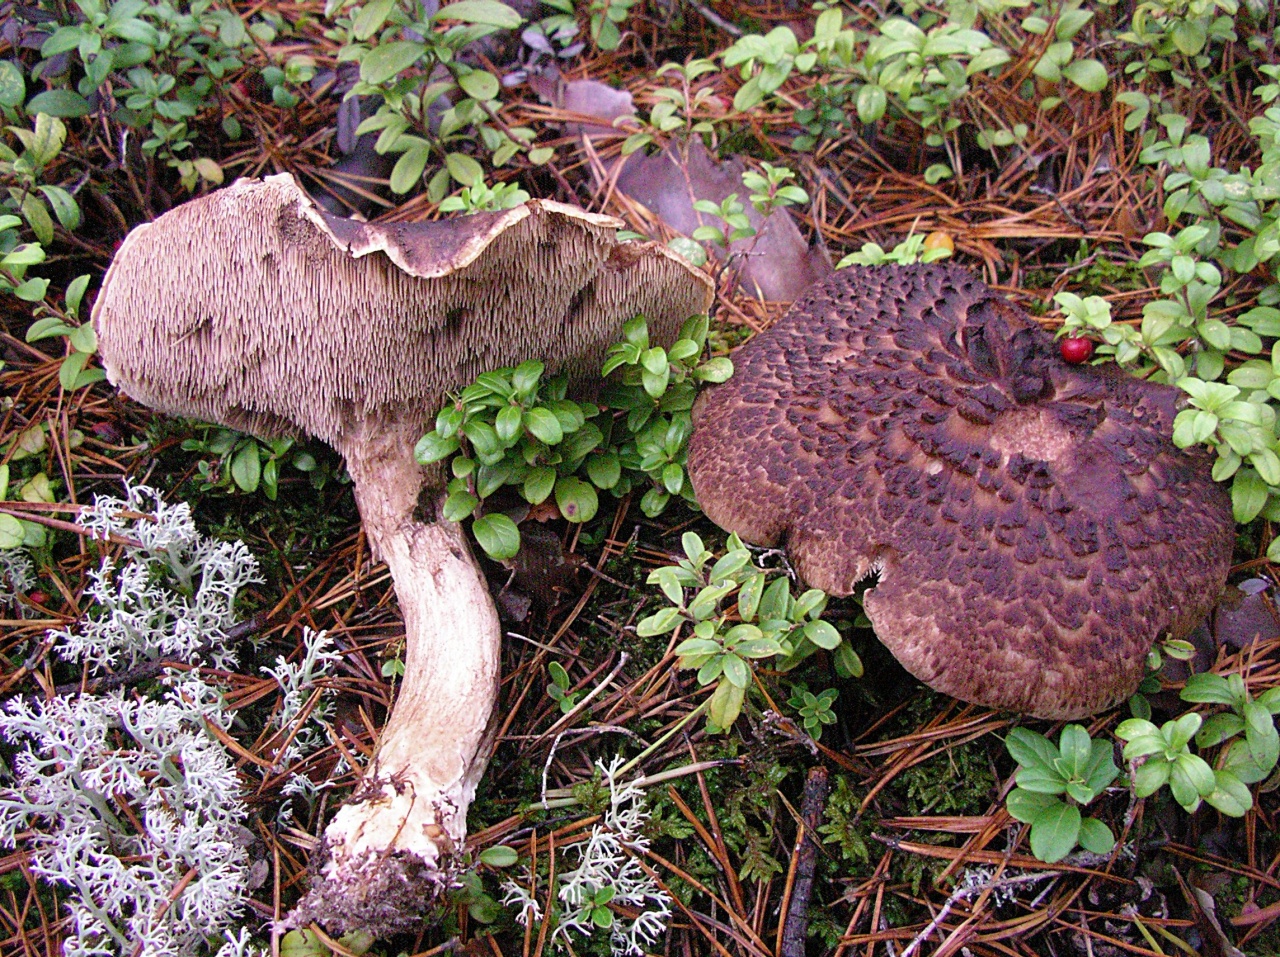 Ежовик пестрый: описание гриба, места распространения, фото